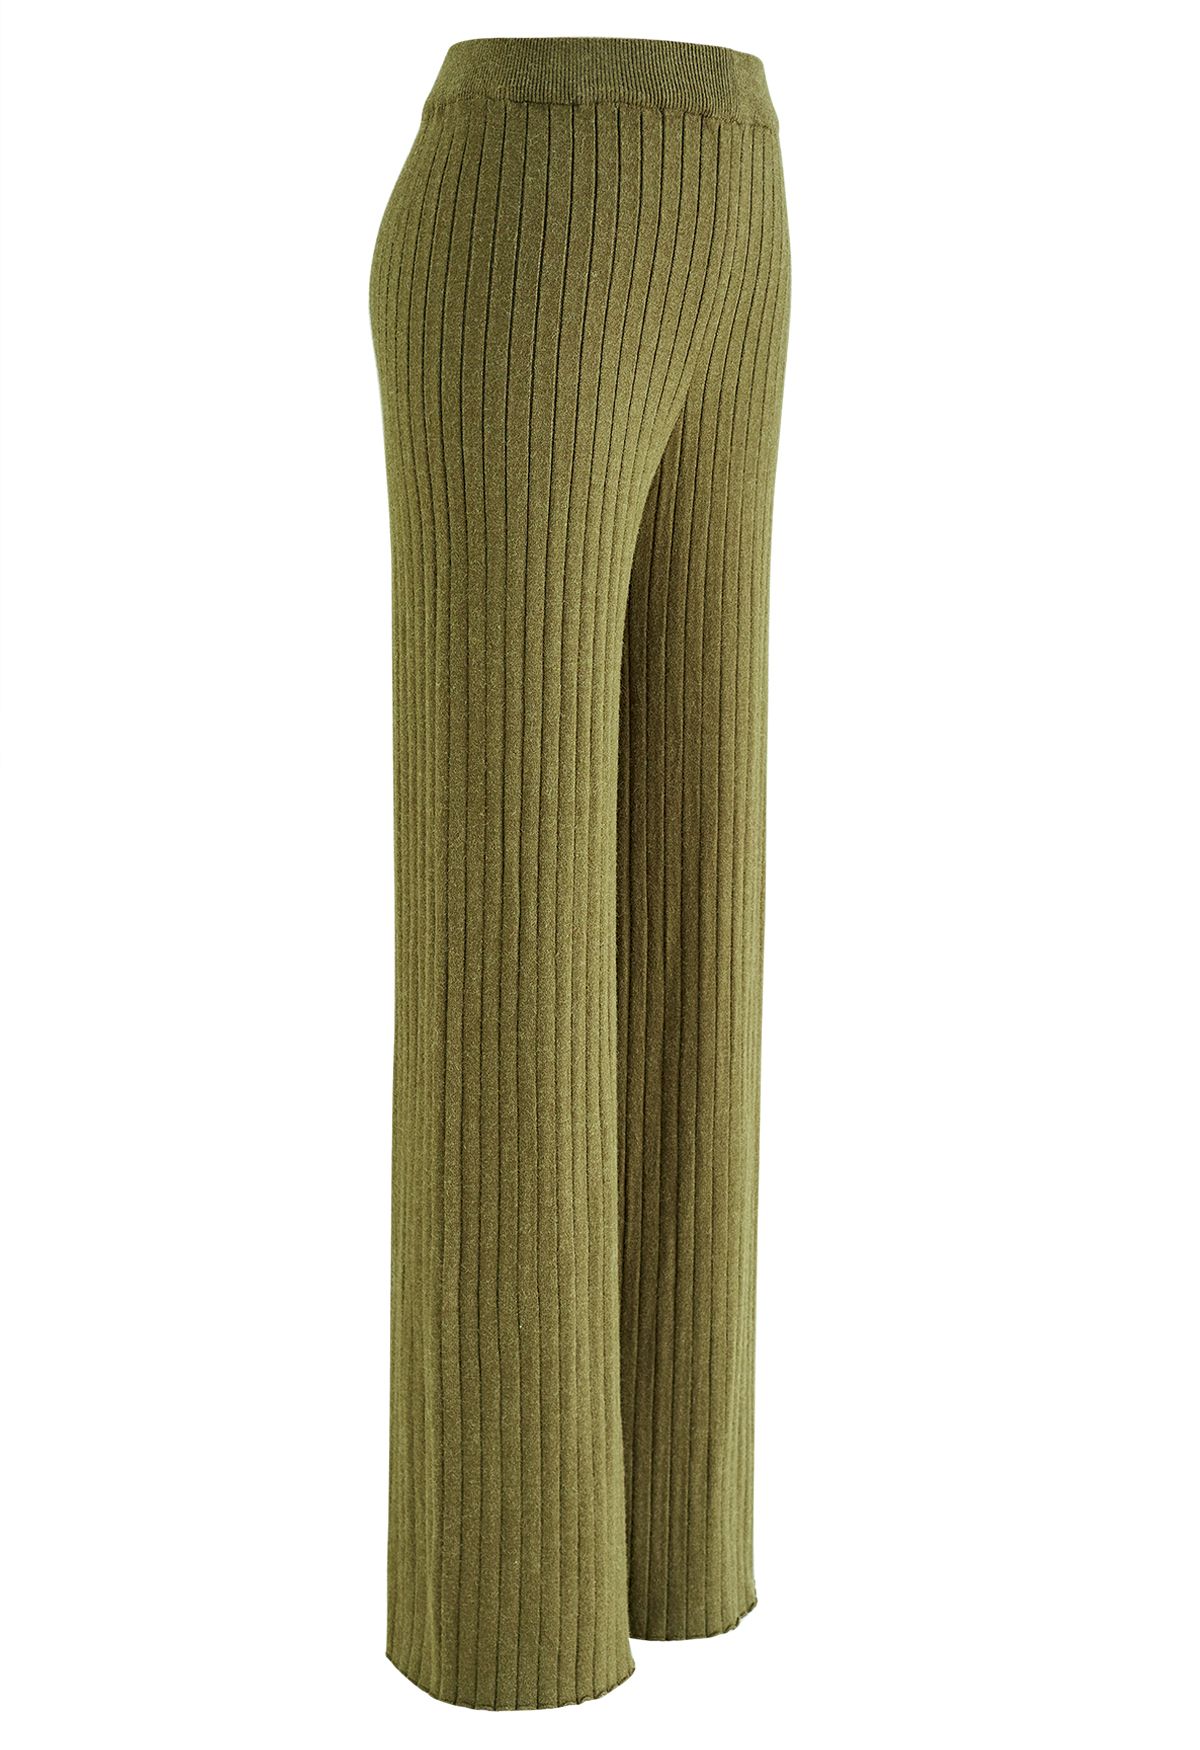 Calça tricotada com perna reta canelada em verde musgo